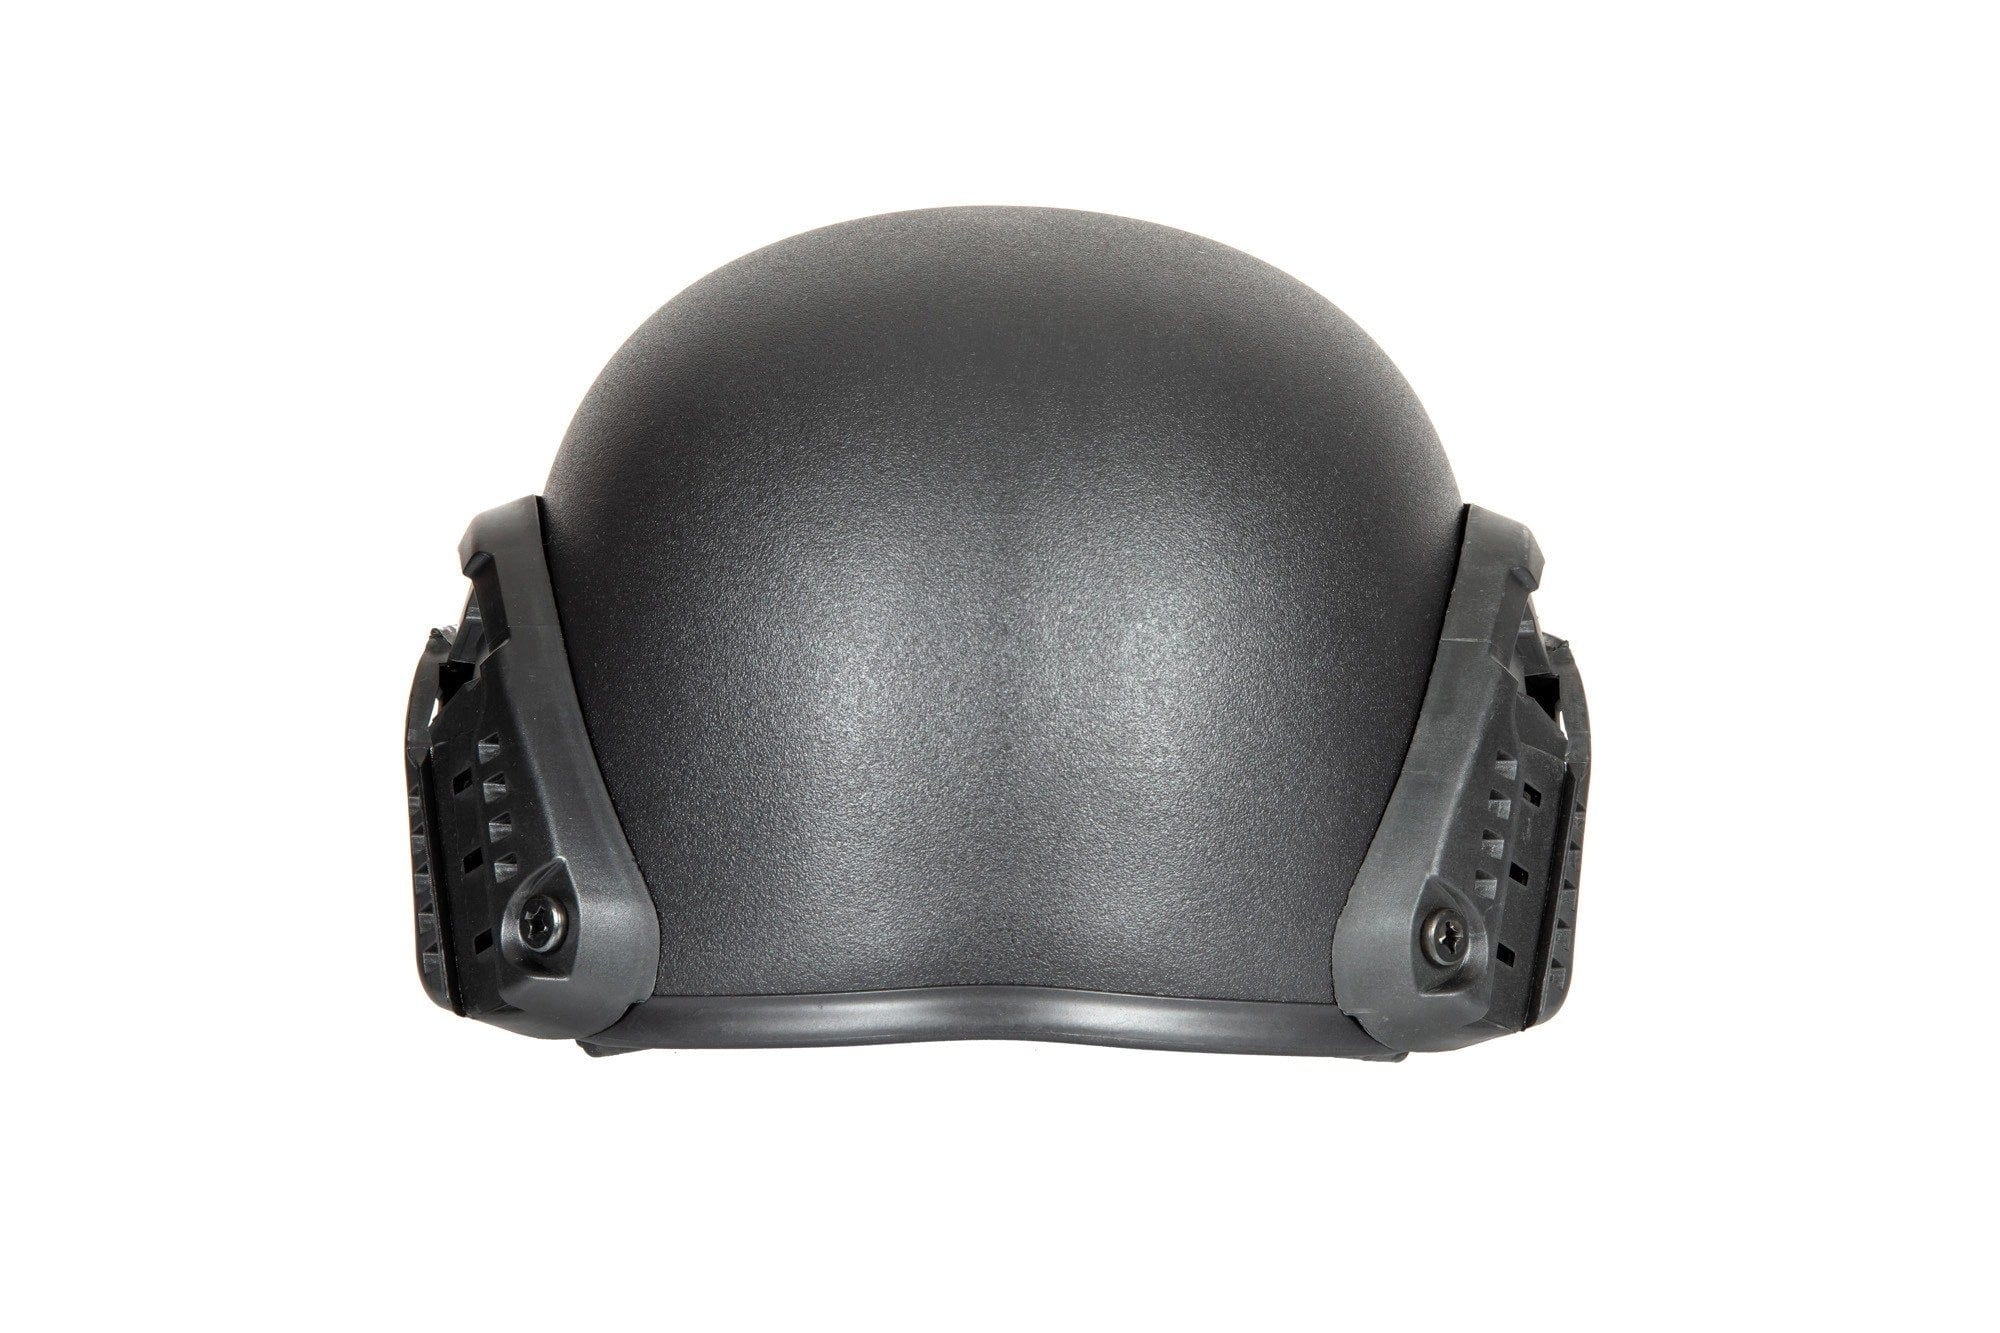 MICH 2000 Helm Replica - Zwart